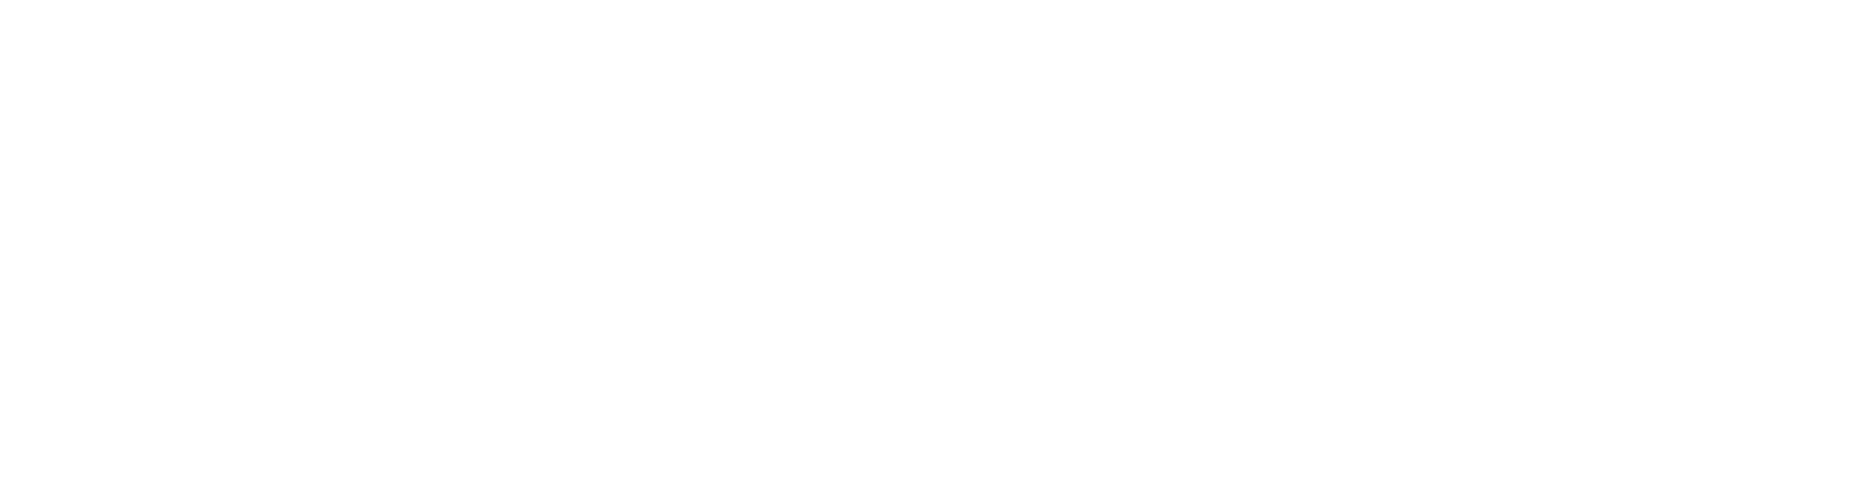 Colonnade logo